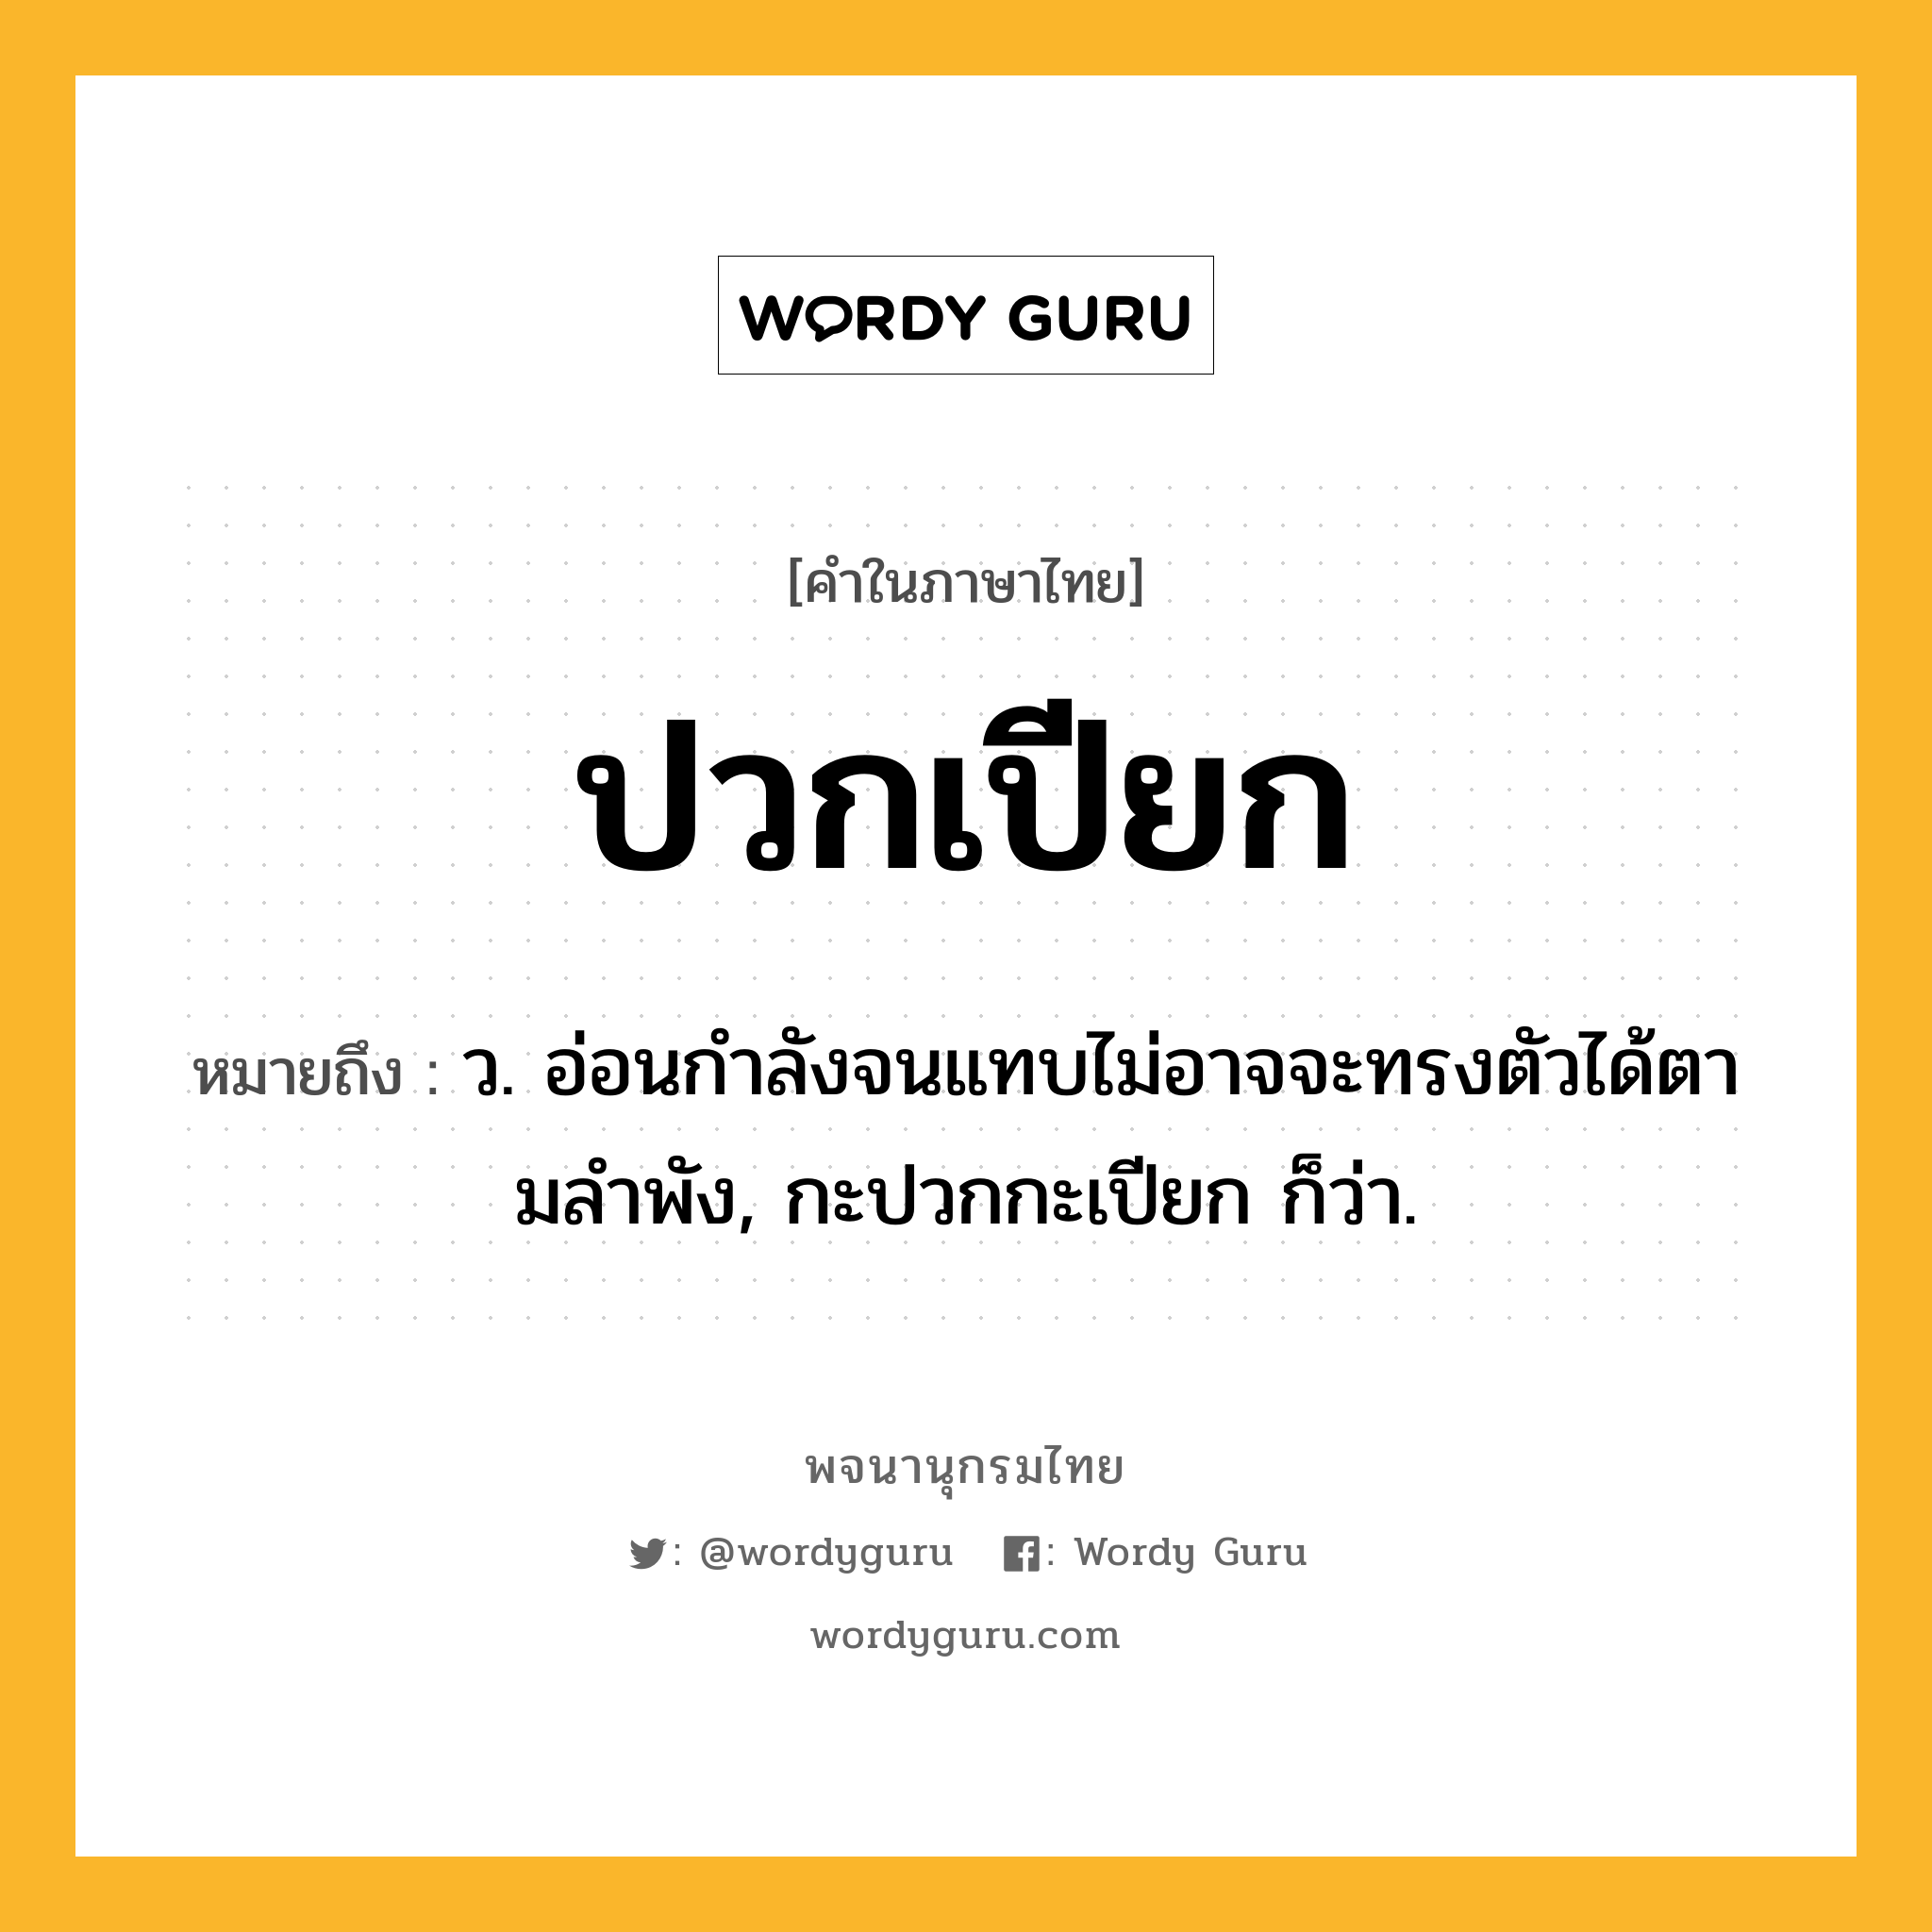 ปวกเปียก หมายถึงอะไร?, คำในภาษาไทย ปวกเปียก หมายถึง ว. อ่อนกําลังจนแทบไม่อาจจะทรงตัวได้ตามลําพัง, กะปวกกะเปียก ก็ว่า.